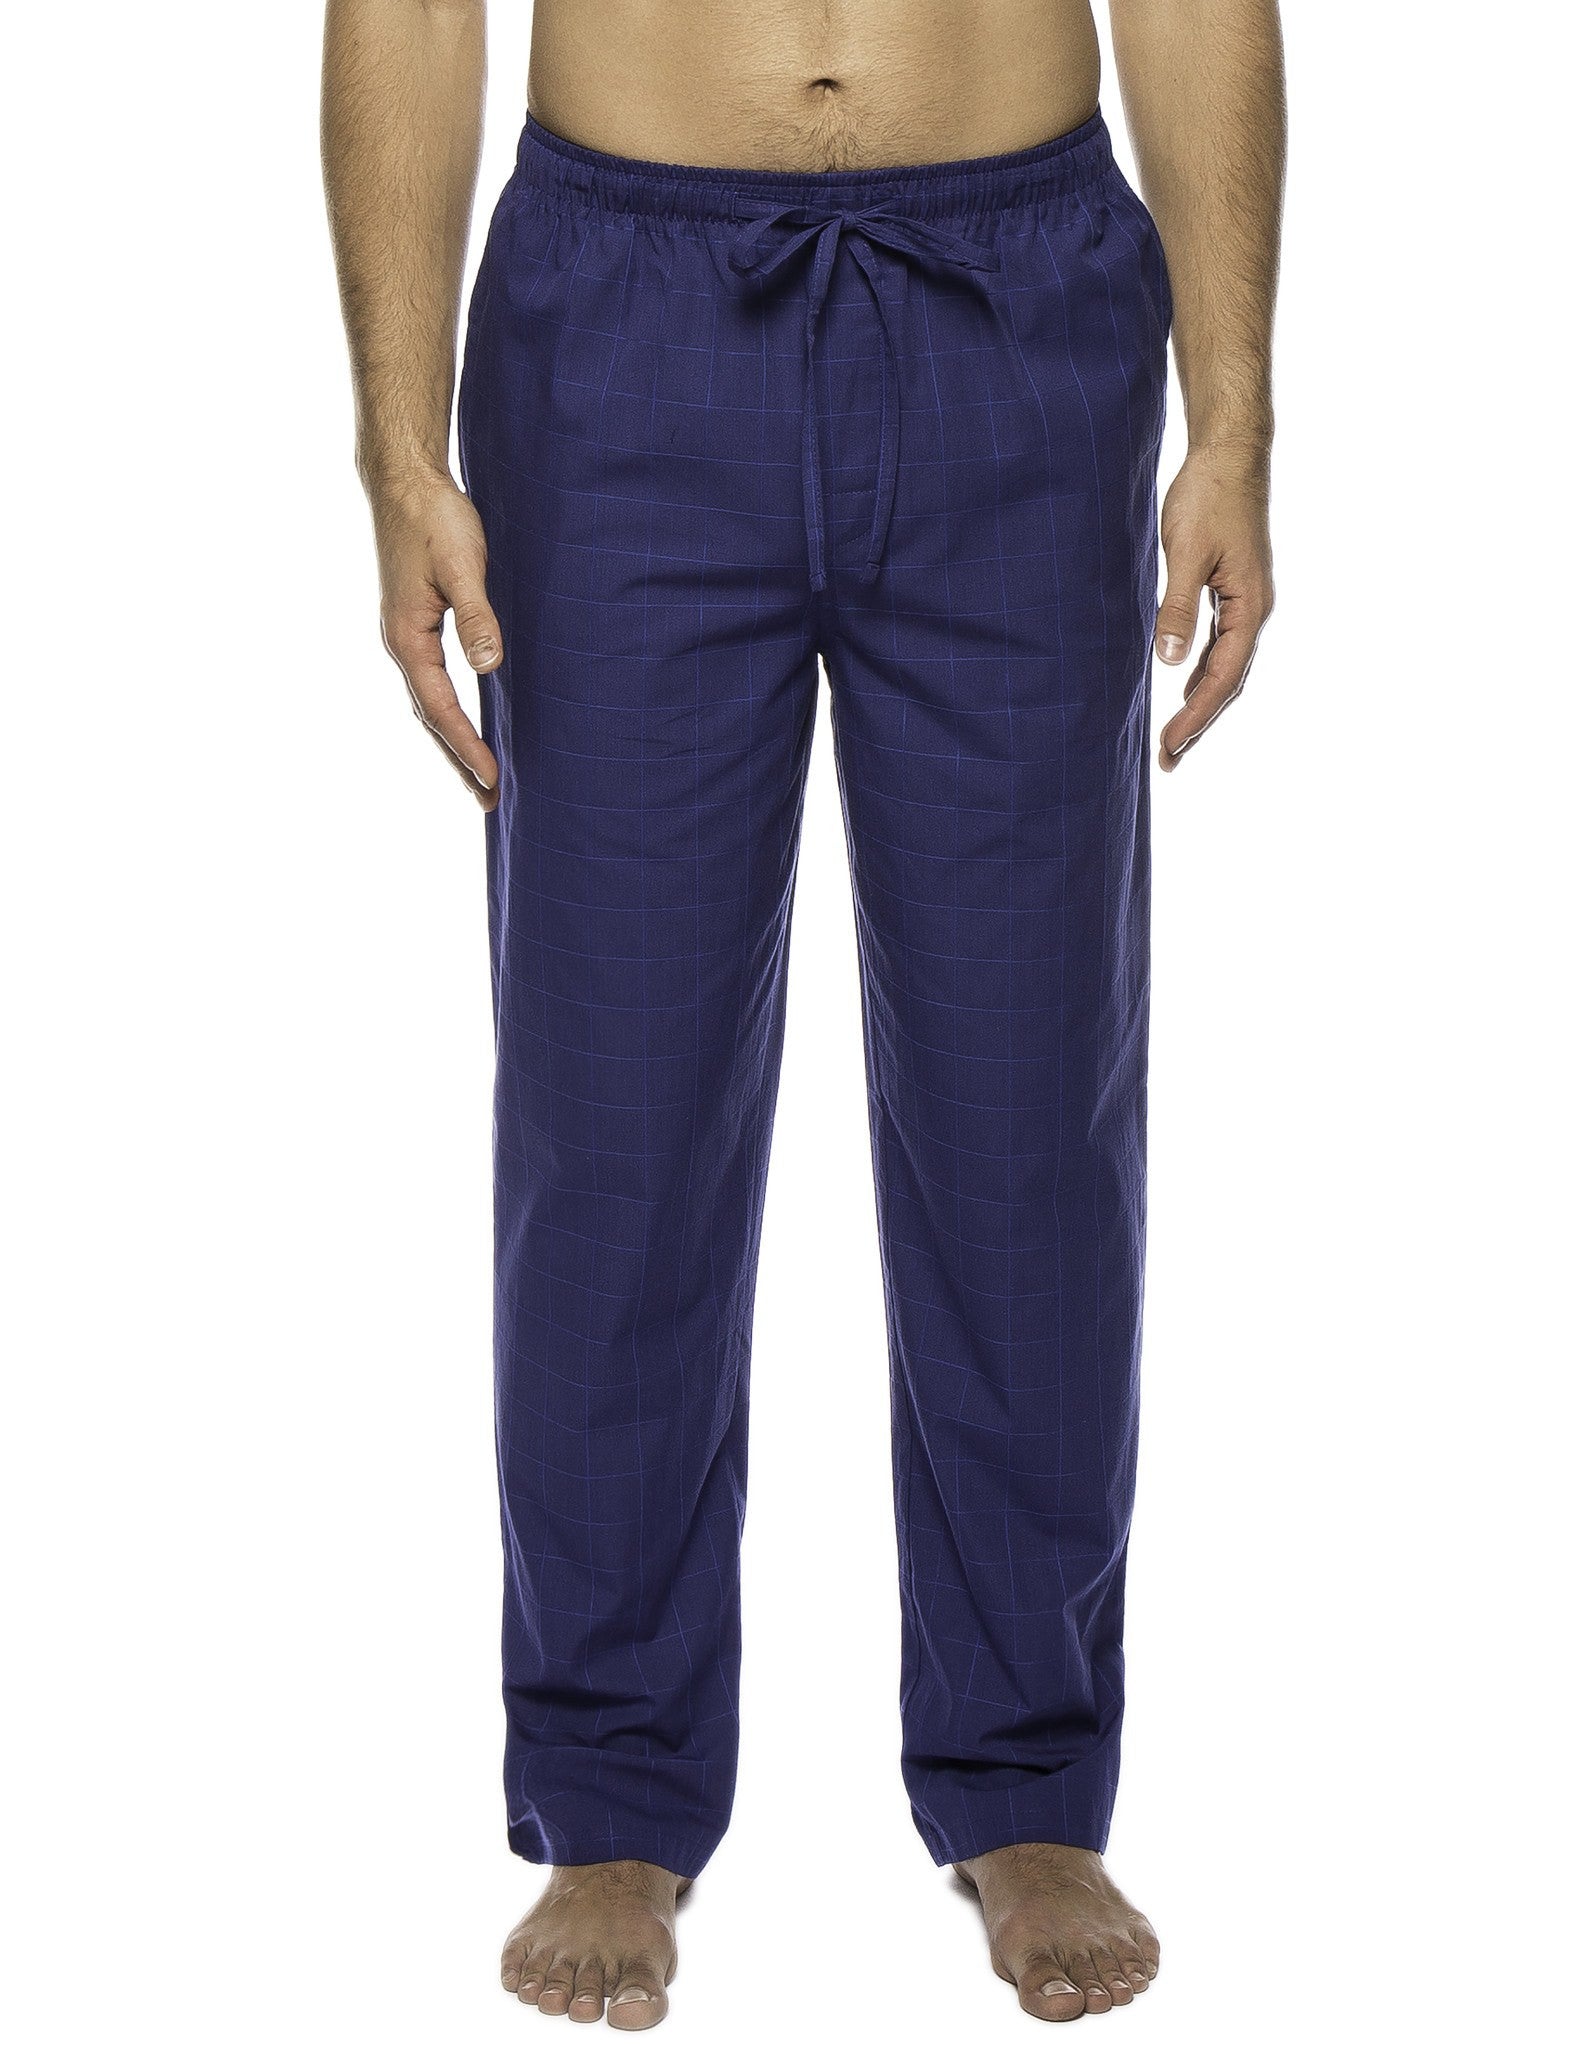 Men's 100% Woven Cotton Lounge Pants – Noble Mount